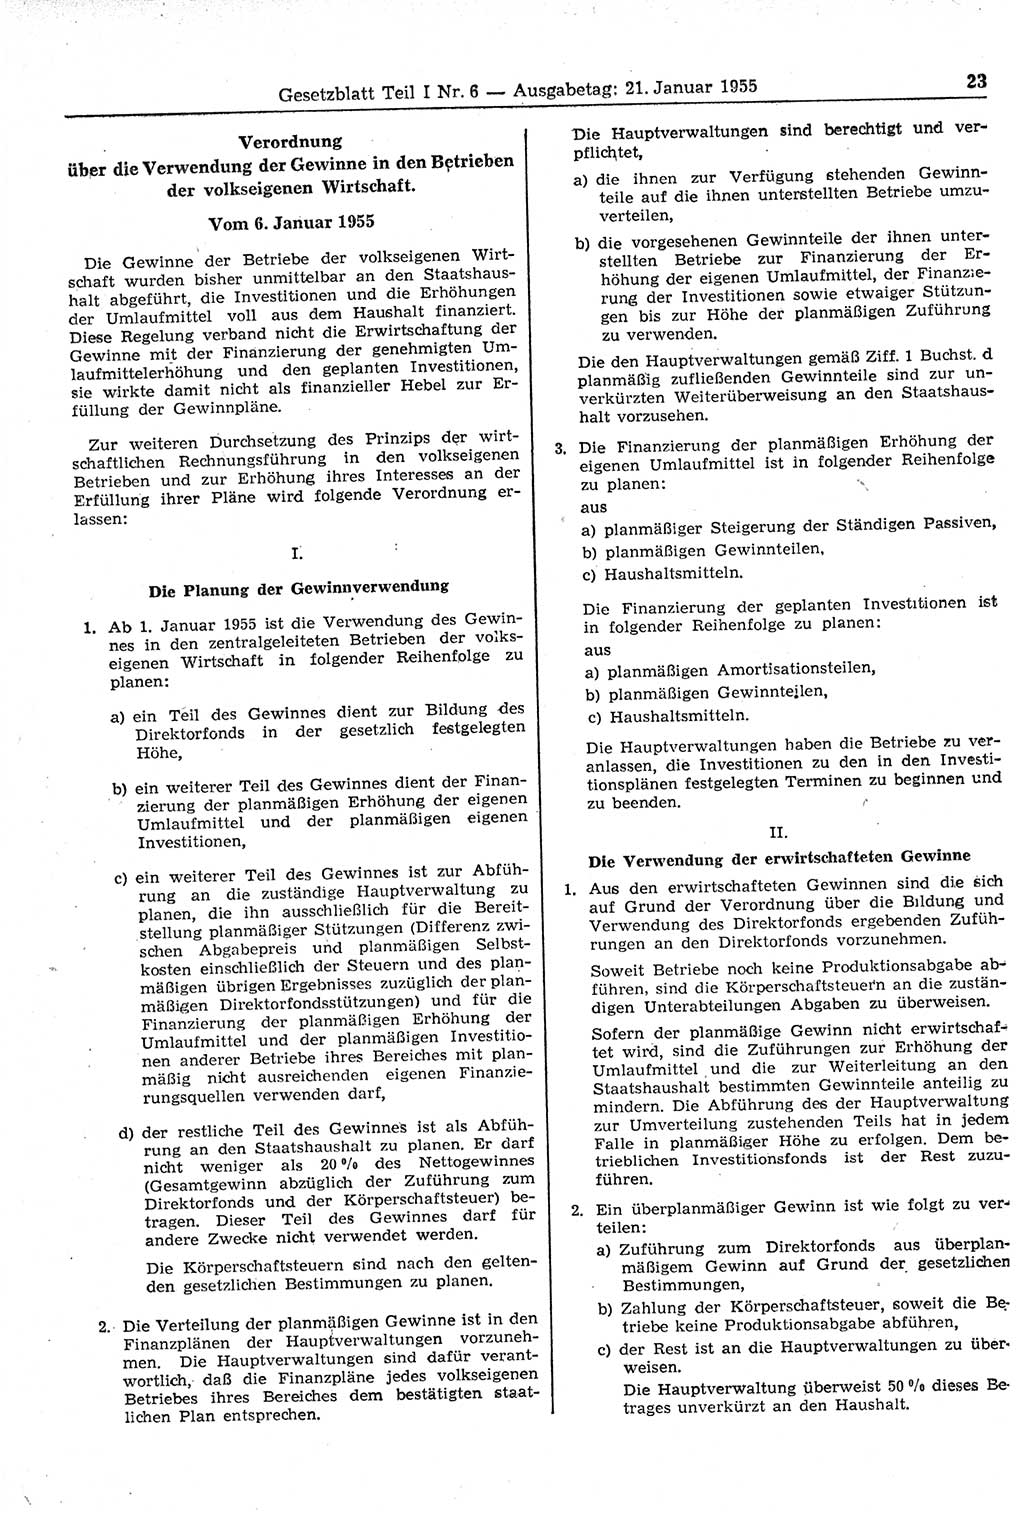 Gesetzblatt (GBl.) der Deutschen Demokratischen Republik (DDR) Teil Ⅰ 1955, Seite 23 (GBl. DDR Ⅰ 1955, S. 23)